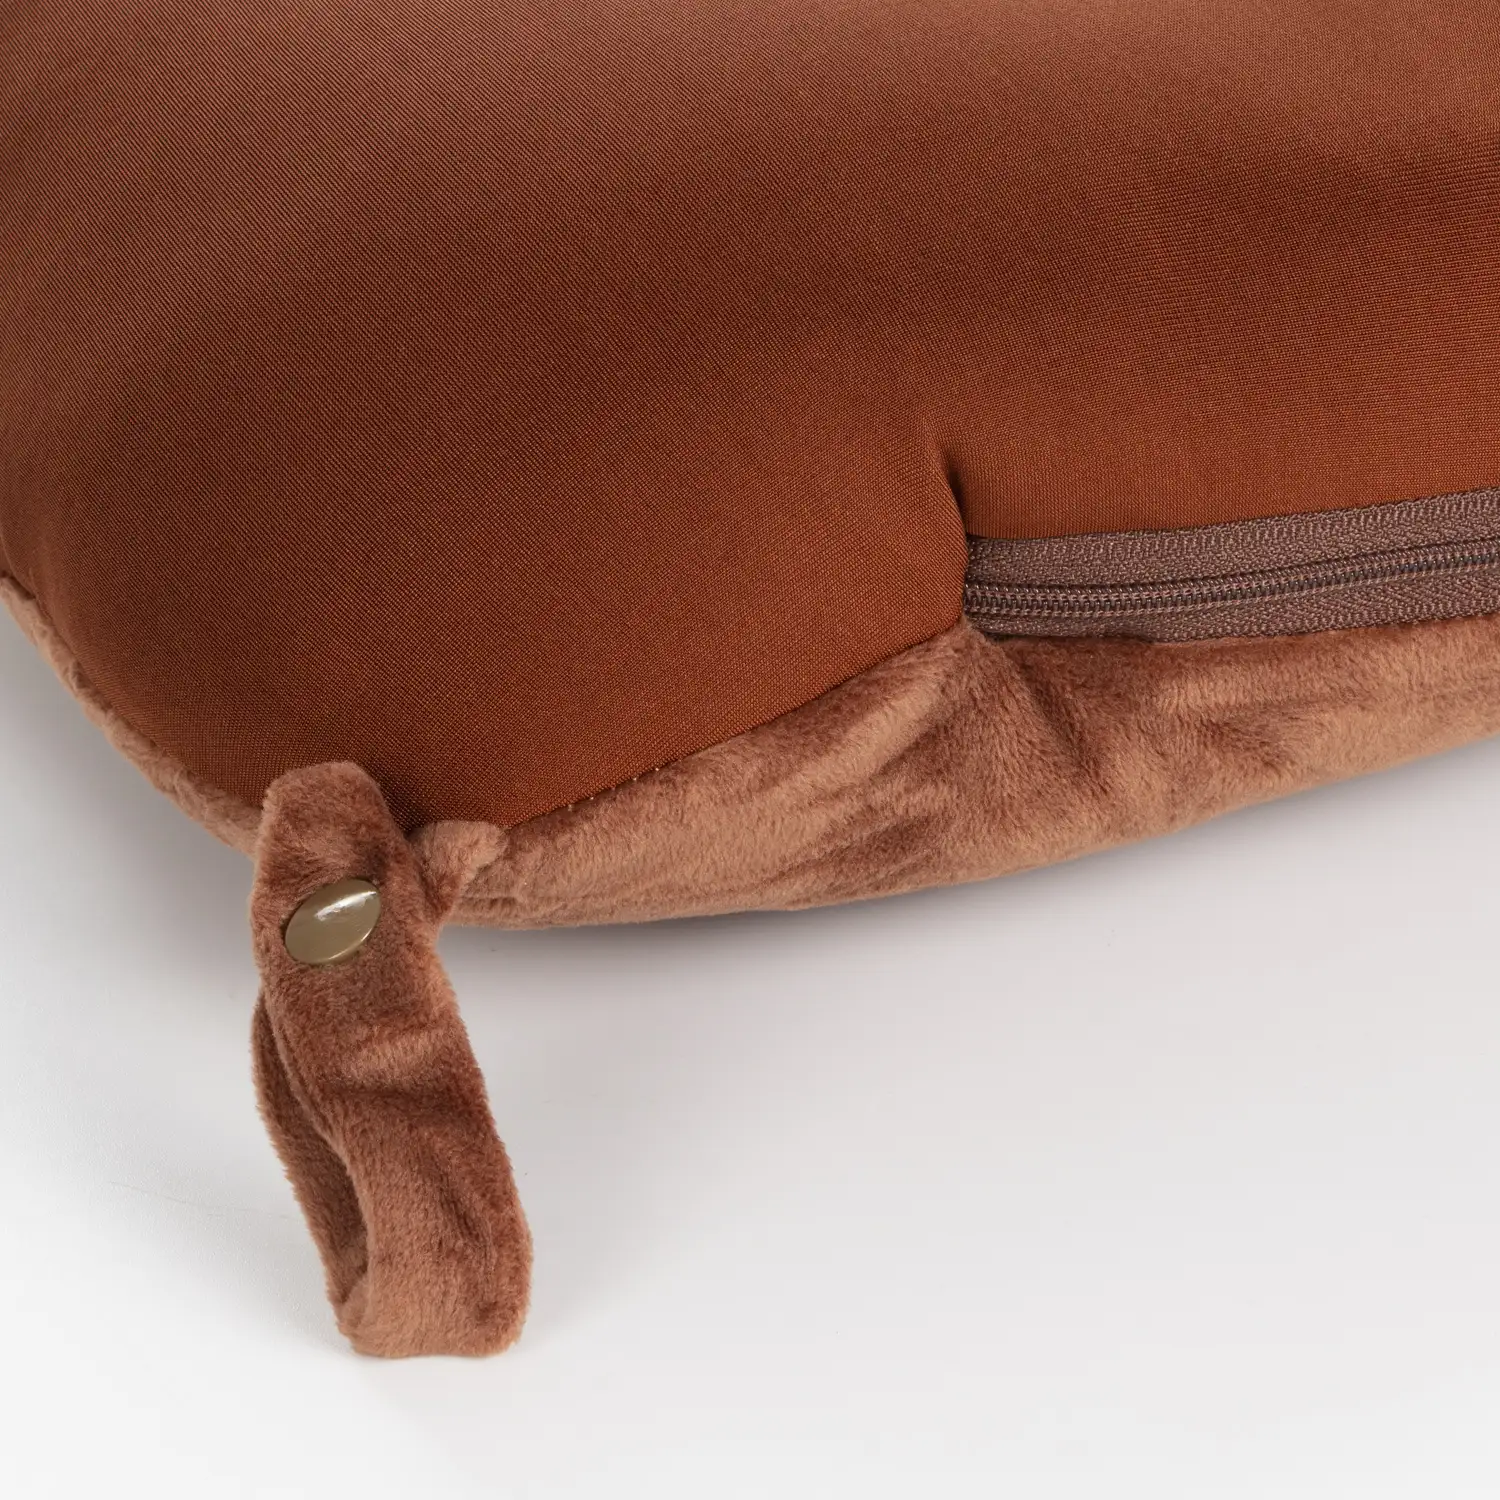 Oso de peluche convertible en almohada de viaje cojín cervical, 2 en 1.